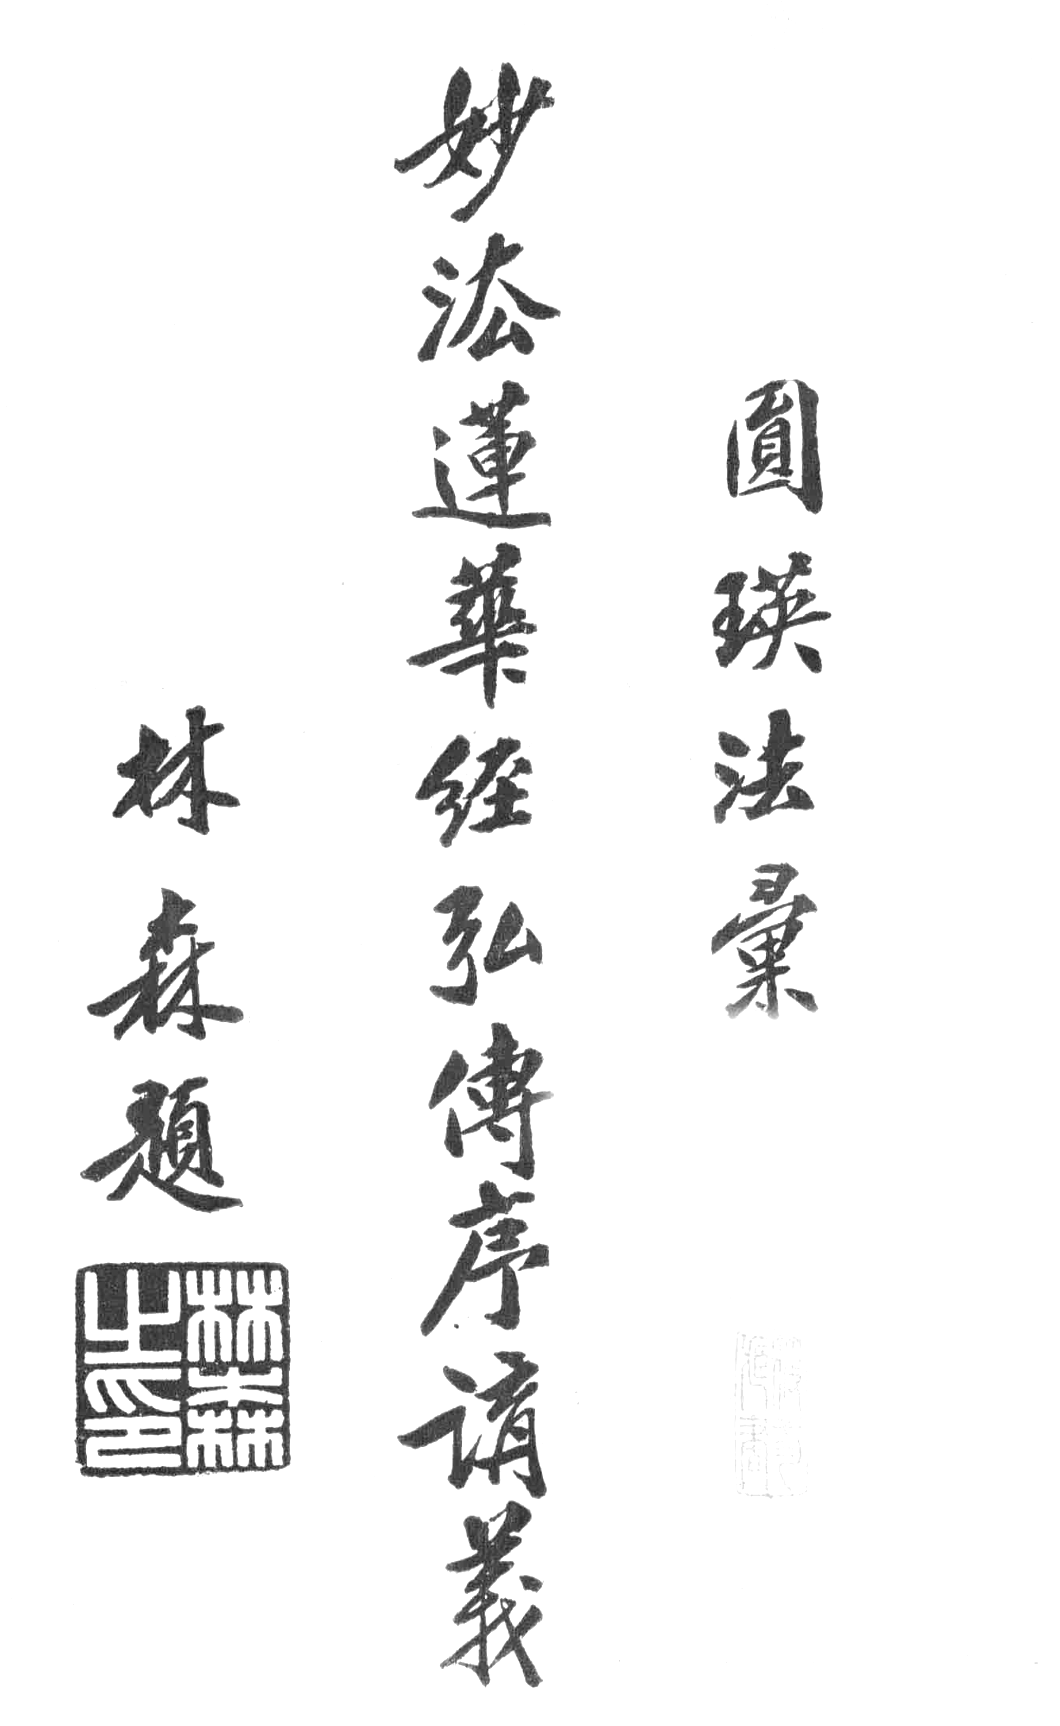 File:Miaofa lianhua jing hongzhuan xu jiangyi 1932.png